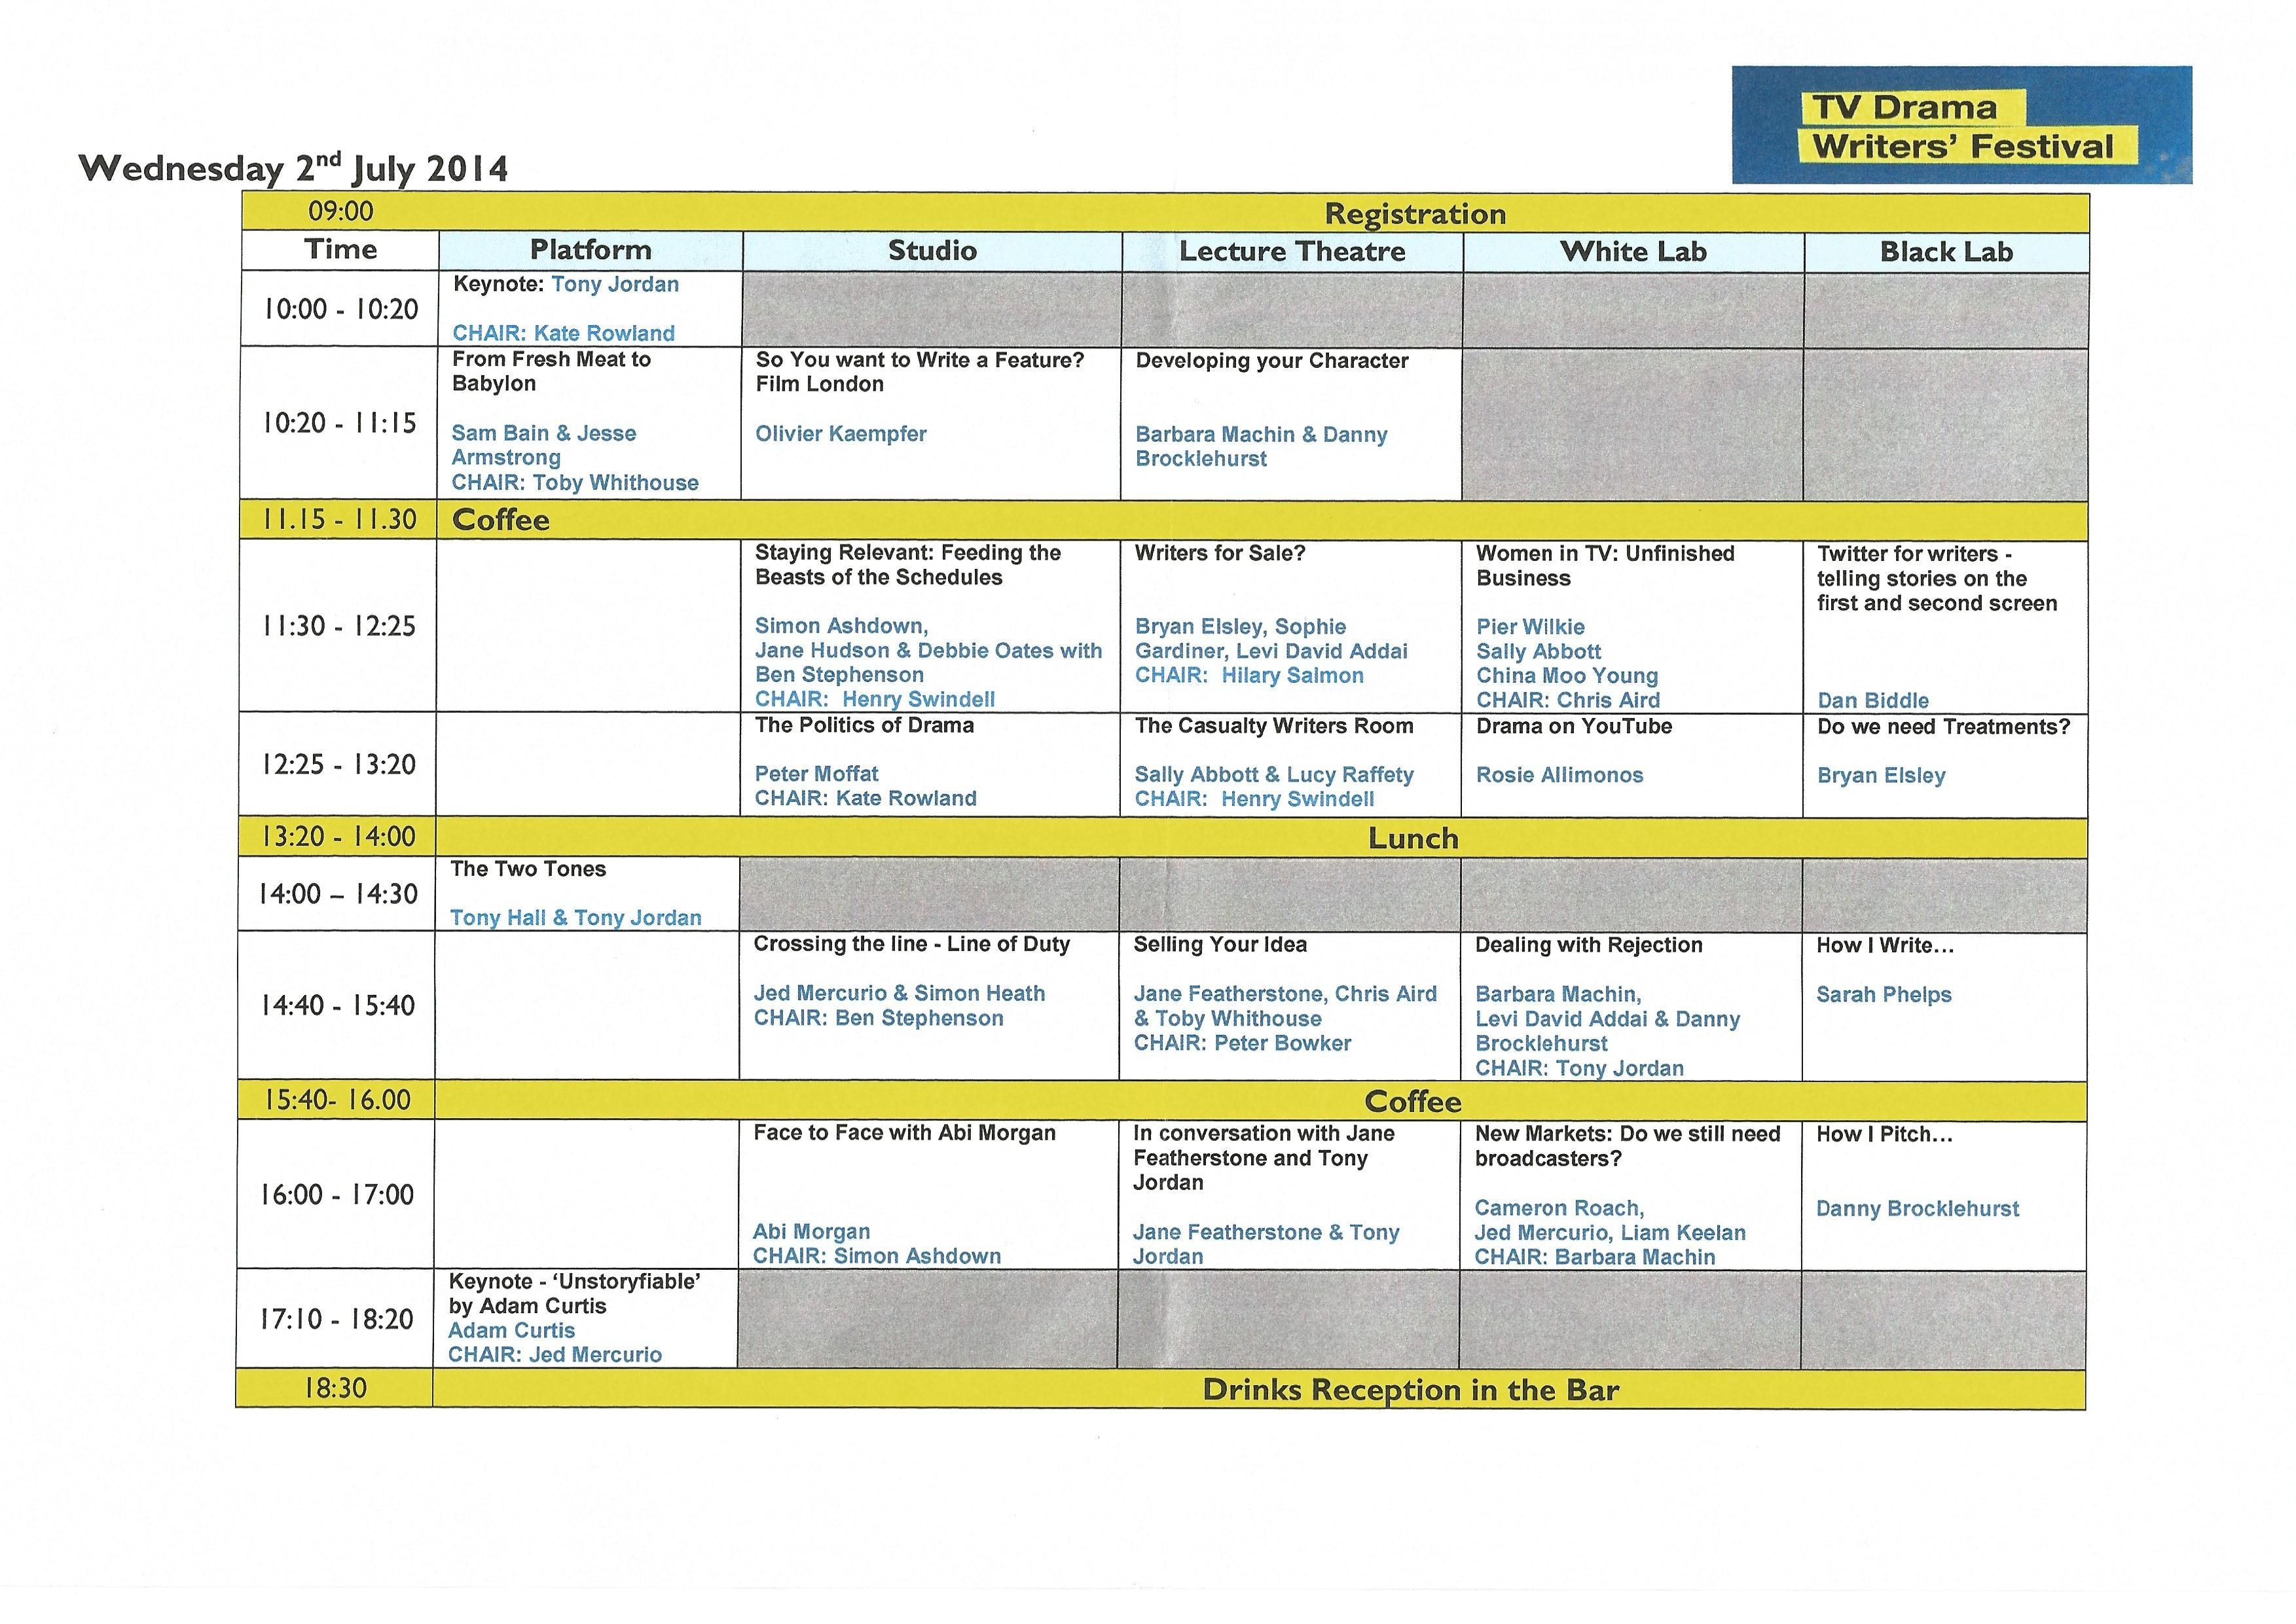 TV Drama Writers Festival 2014 schedule300dpi